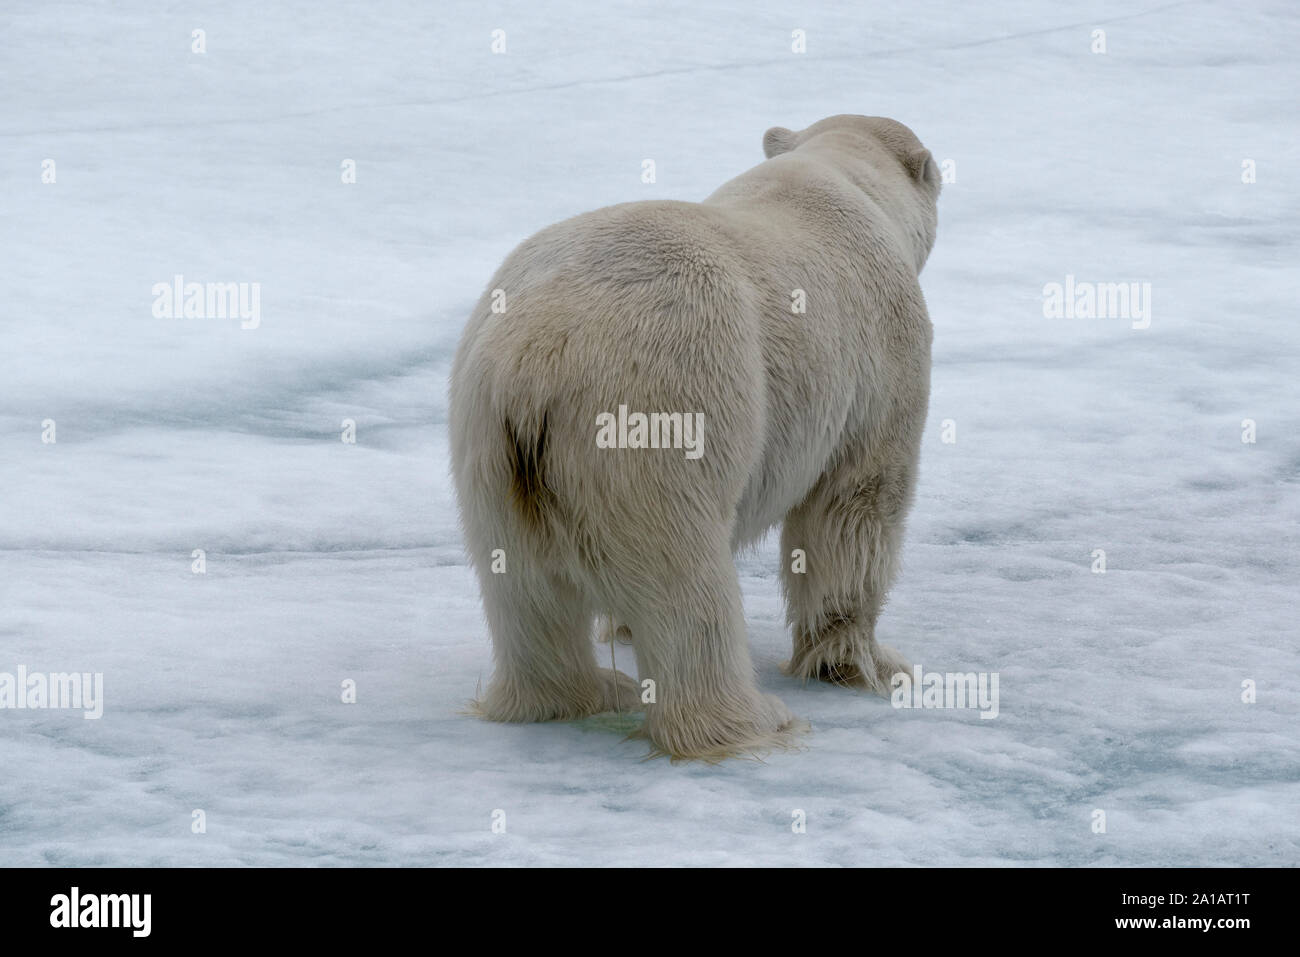 Eisbär (Ursus maritimus) e auf Eisscholle, Rückansicht, nördliche Packeisgrenze, Svalbard, Norwegen. Eisbär auf Packeis, Svalbard, Norwegen Stockfoto